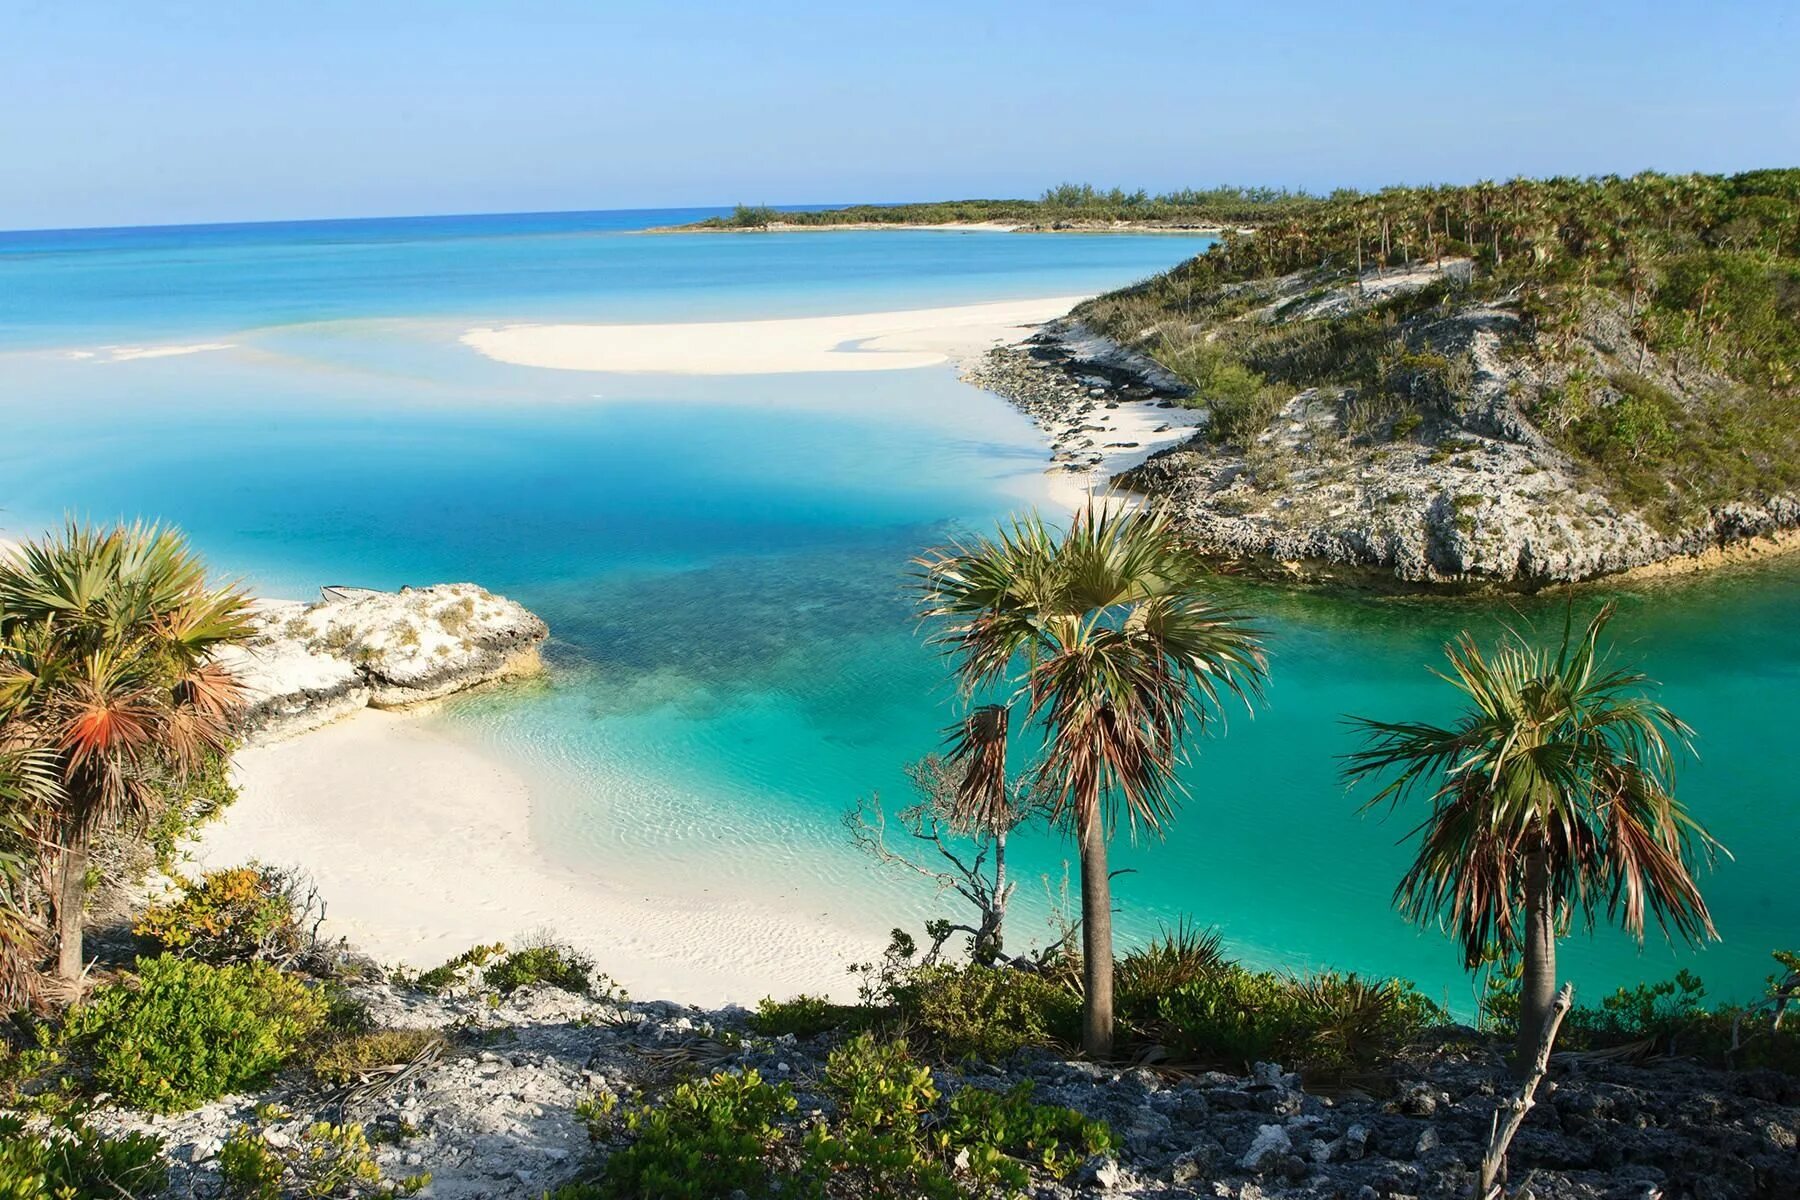 Bahamas islands. Остров Эксума Багамы. Остров Парадайз Багамские острова. Багамские острова Атлантис. Нассау Багамские острова пляжи.